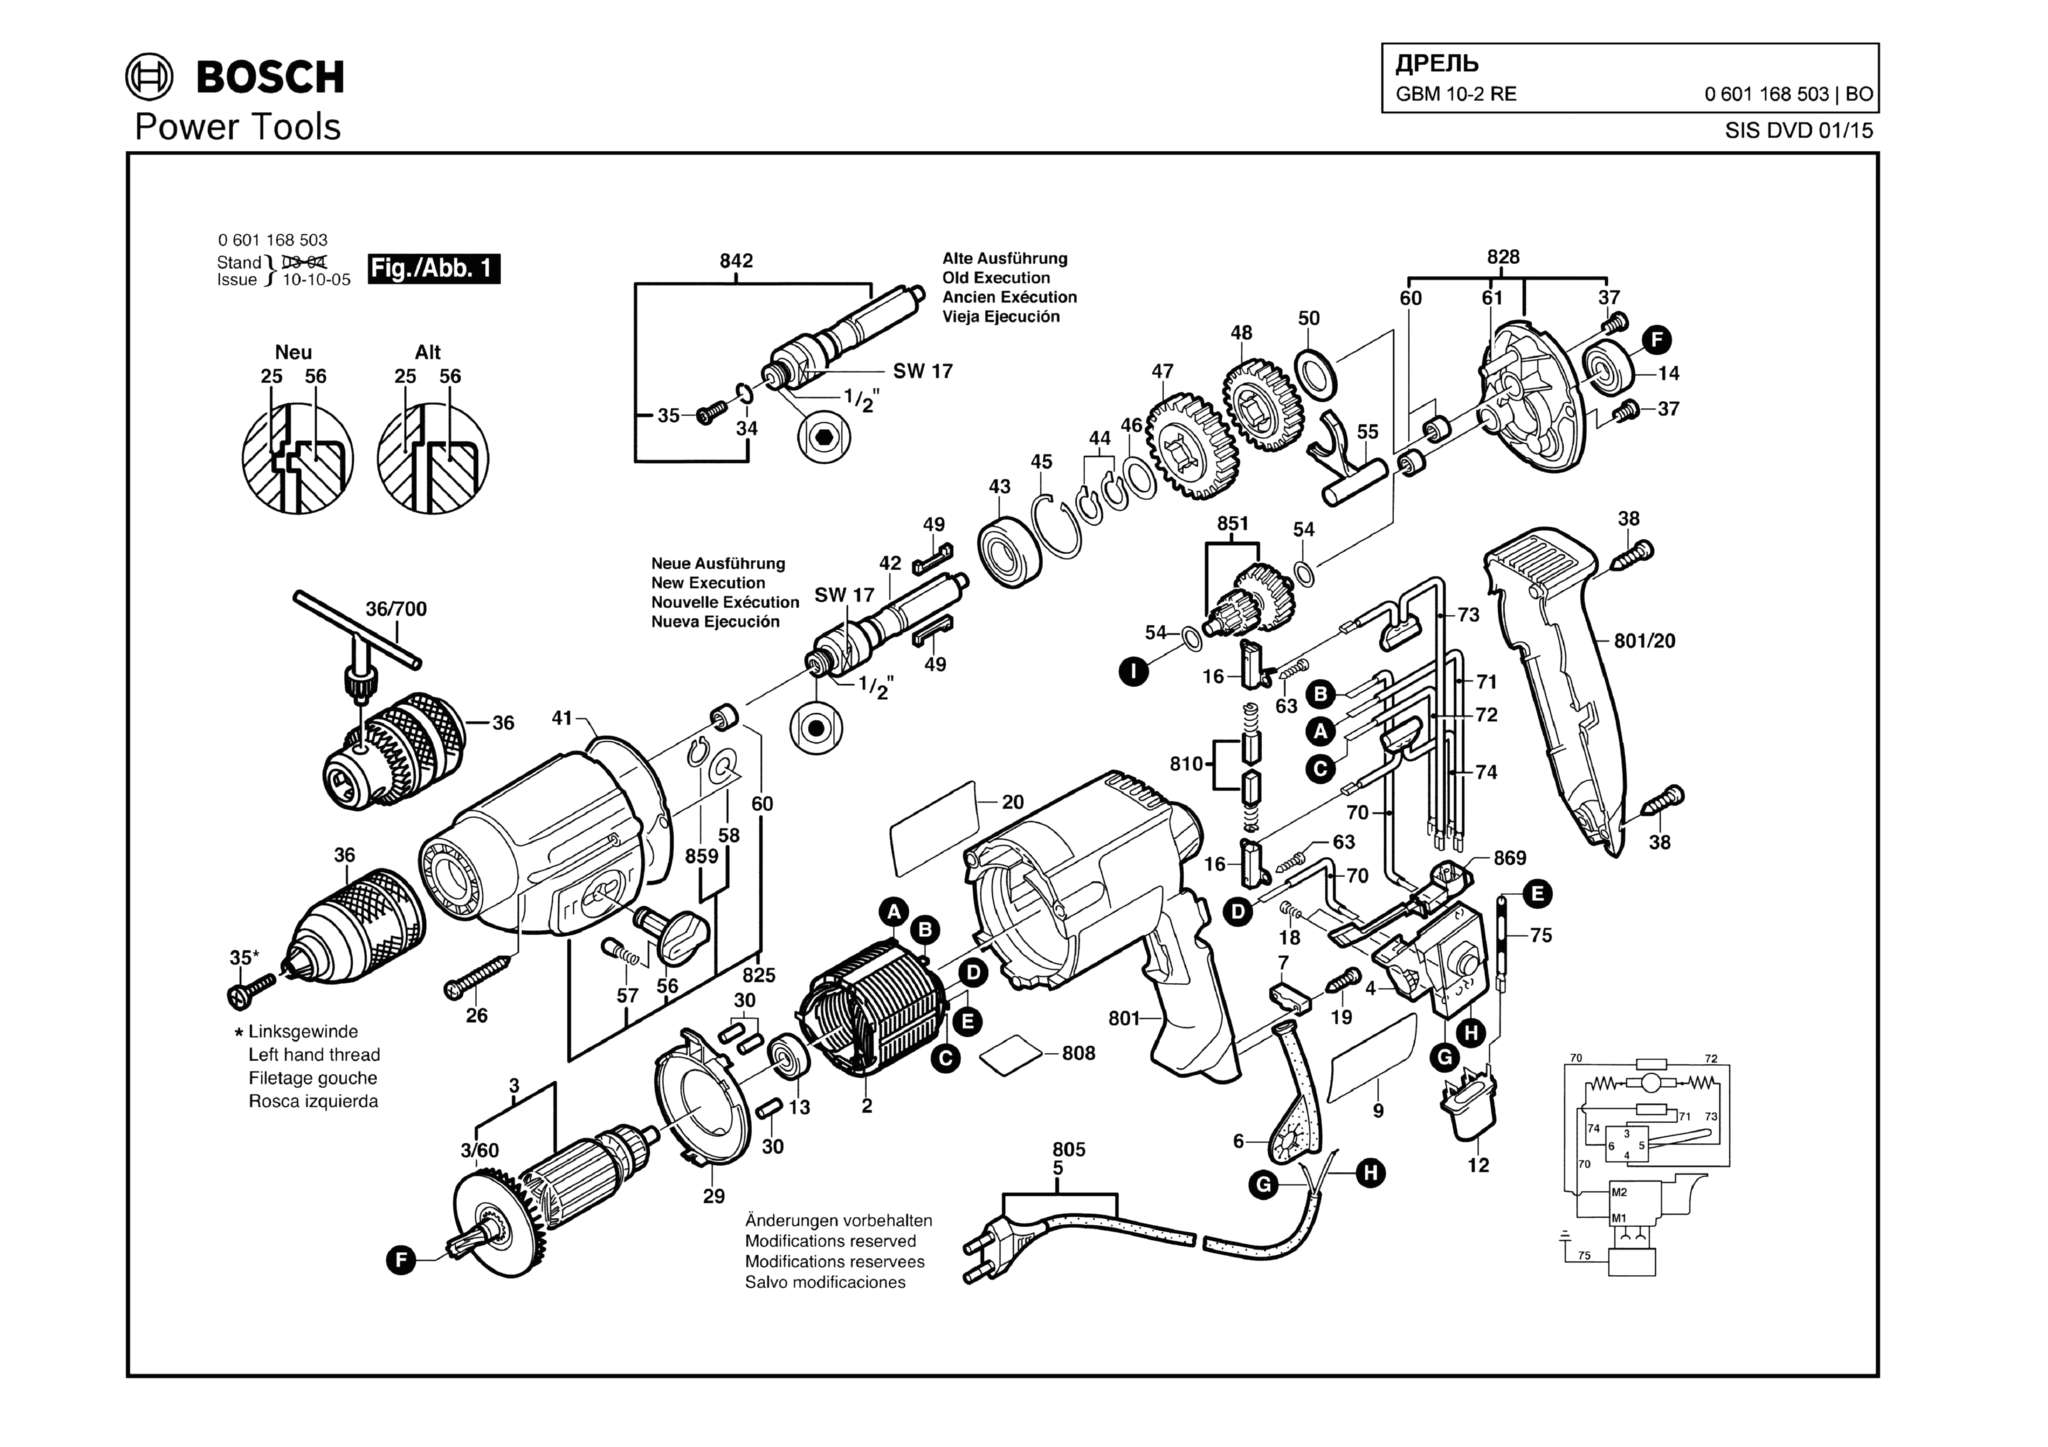 Запчасти, схема и деталировка Bosch GBM 10-2 RE (ТИП 0601168503)